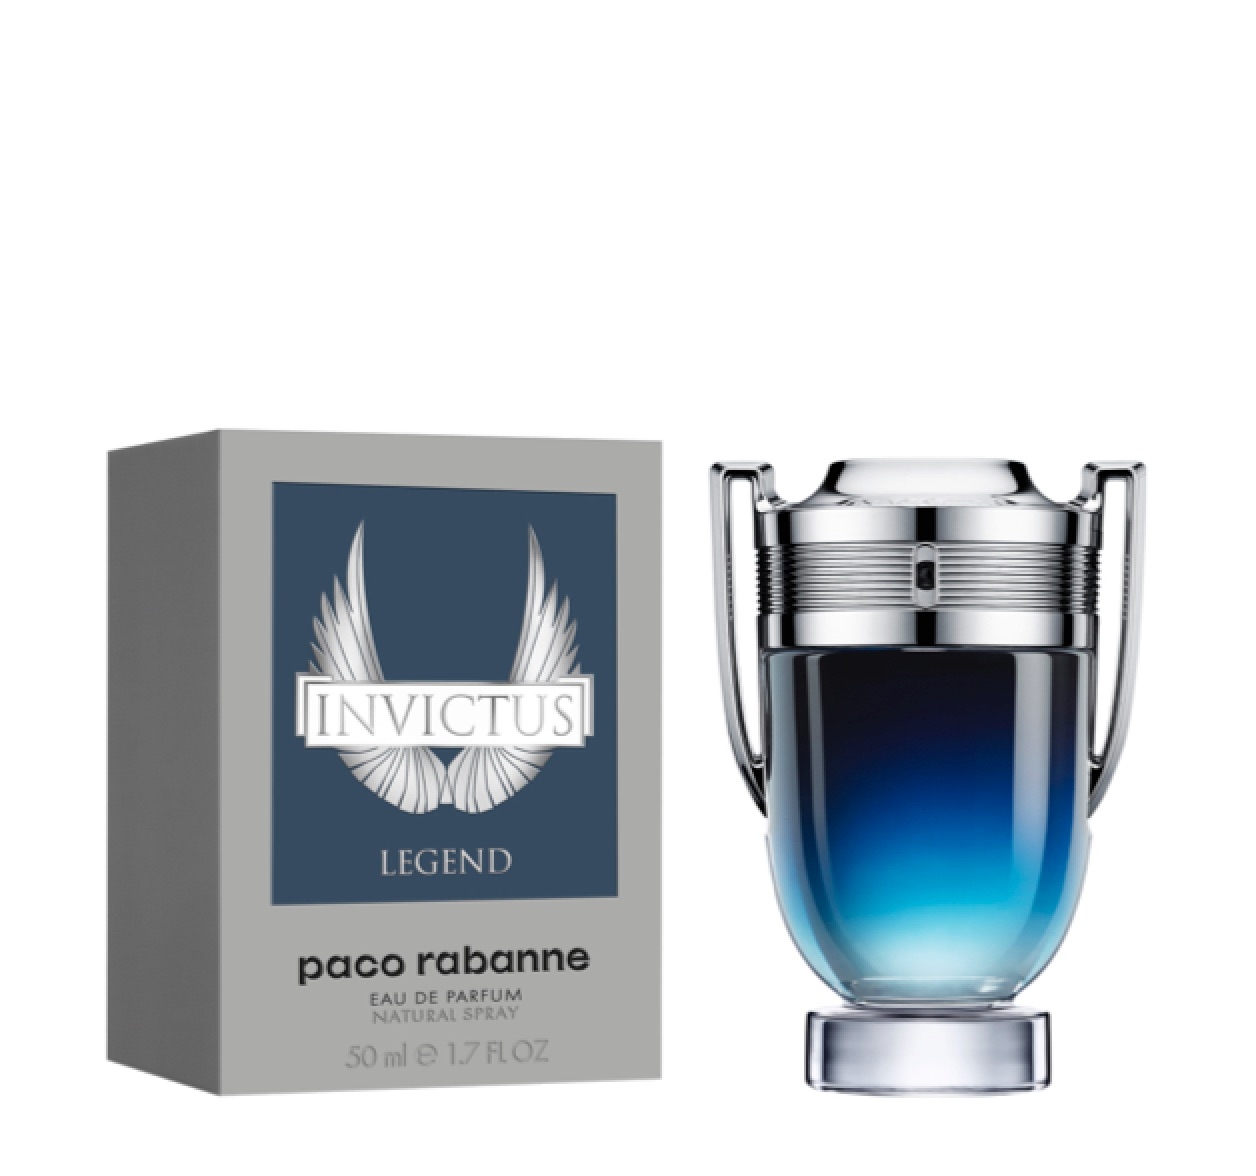 Paco Rabanne Invictus Legend Eau de Parfum 50ml – Perfume Essence